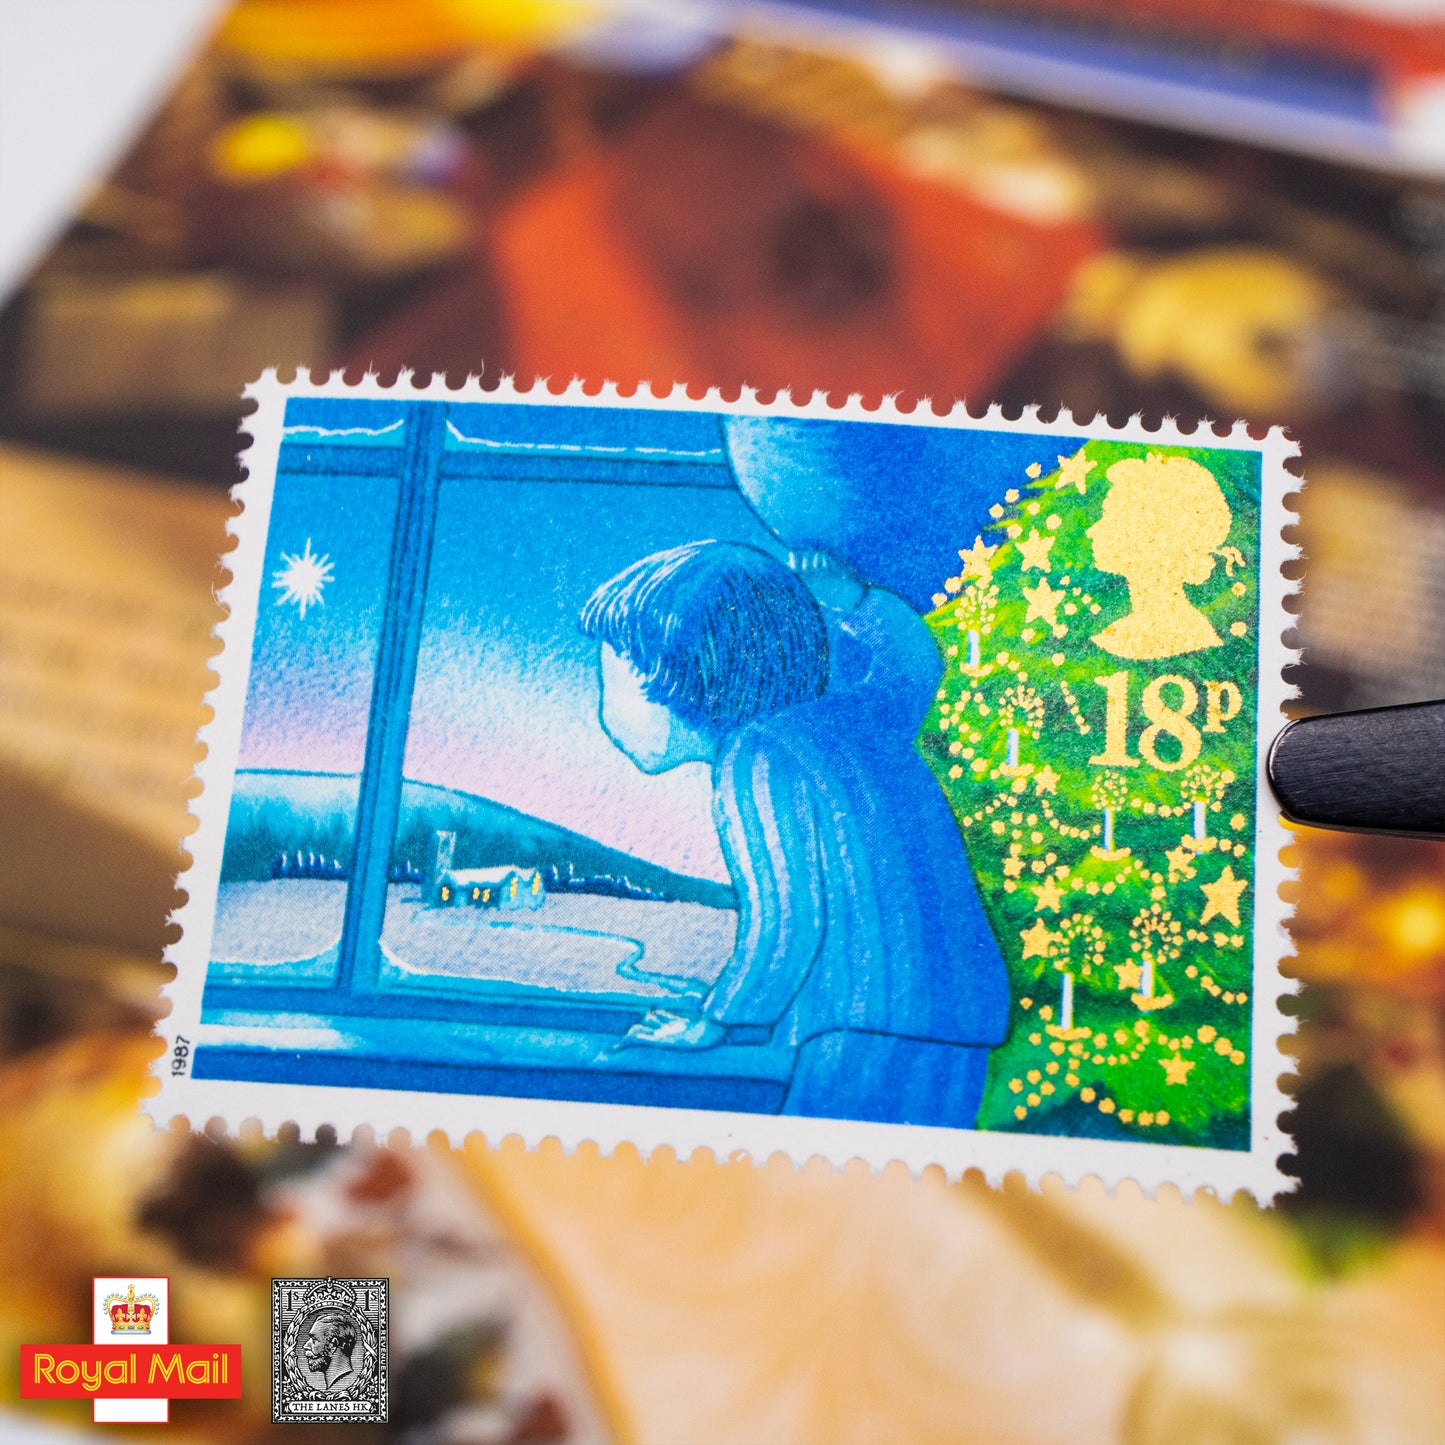 #185: 1987年 聖誕節 紀念郵票展示包